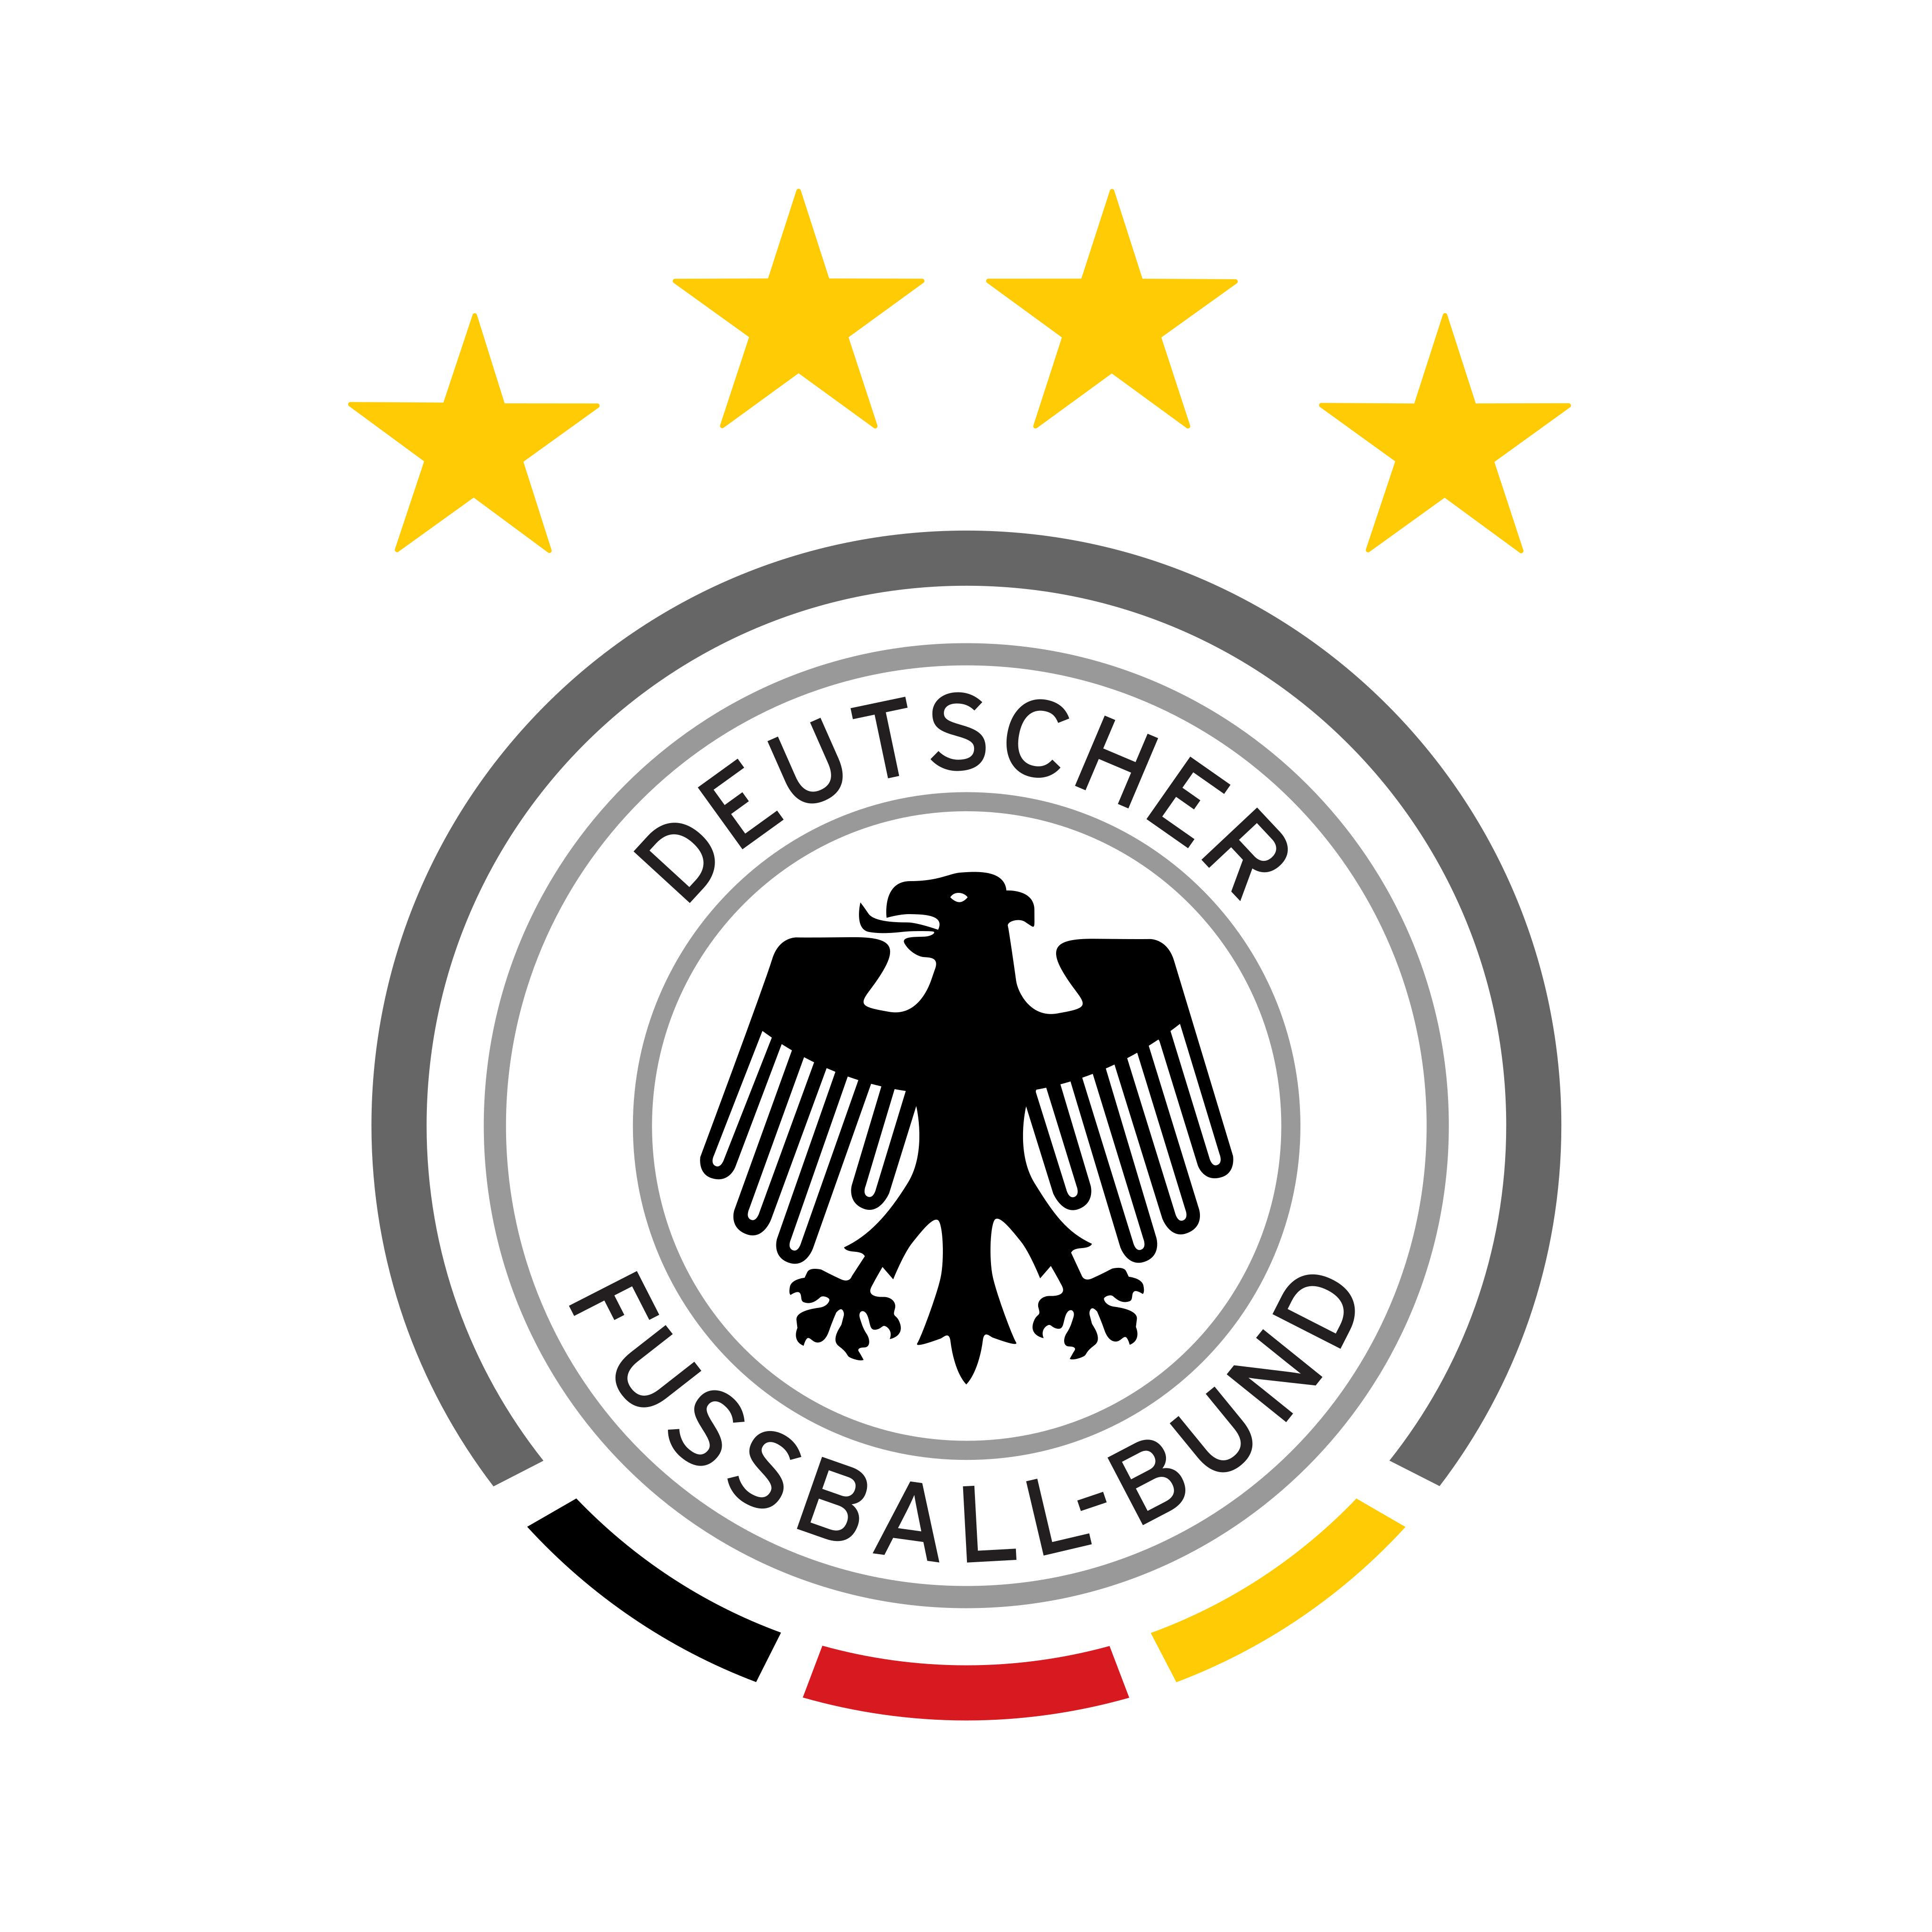 germany national football team logo 0 - Germany National Football Team Logo